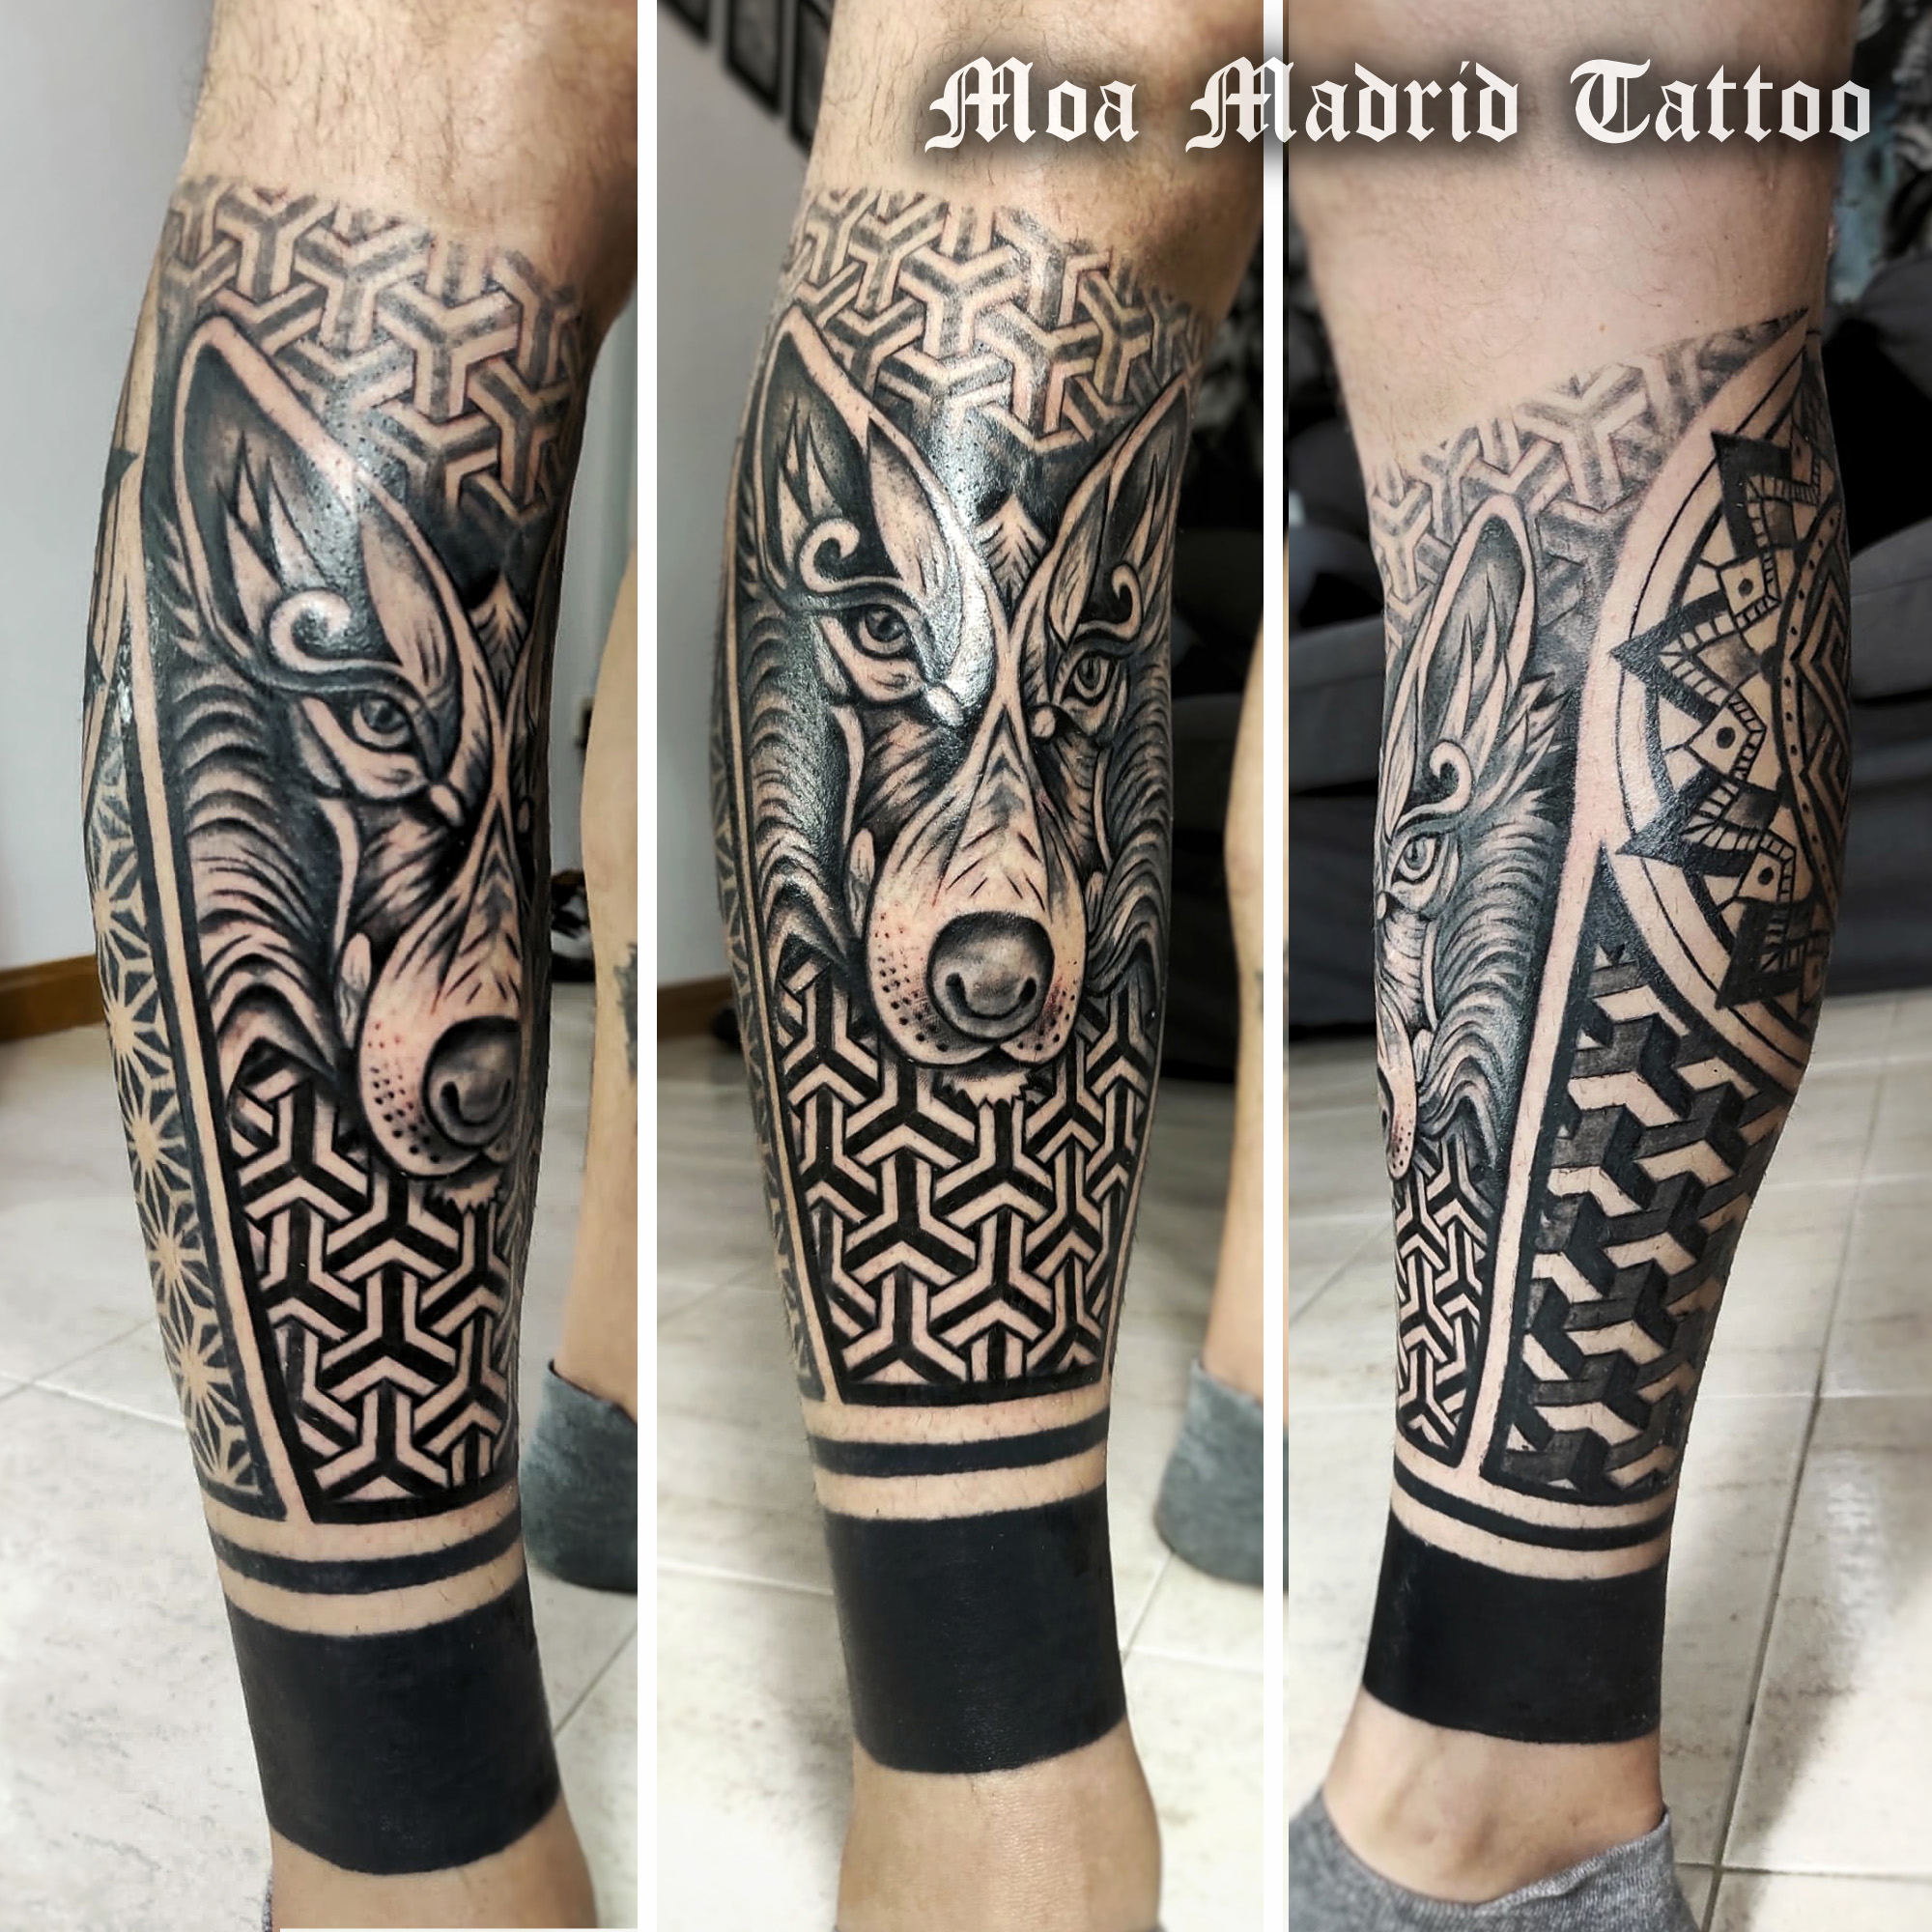 Nuevo estilo de tatuaje: geométrico con lobo